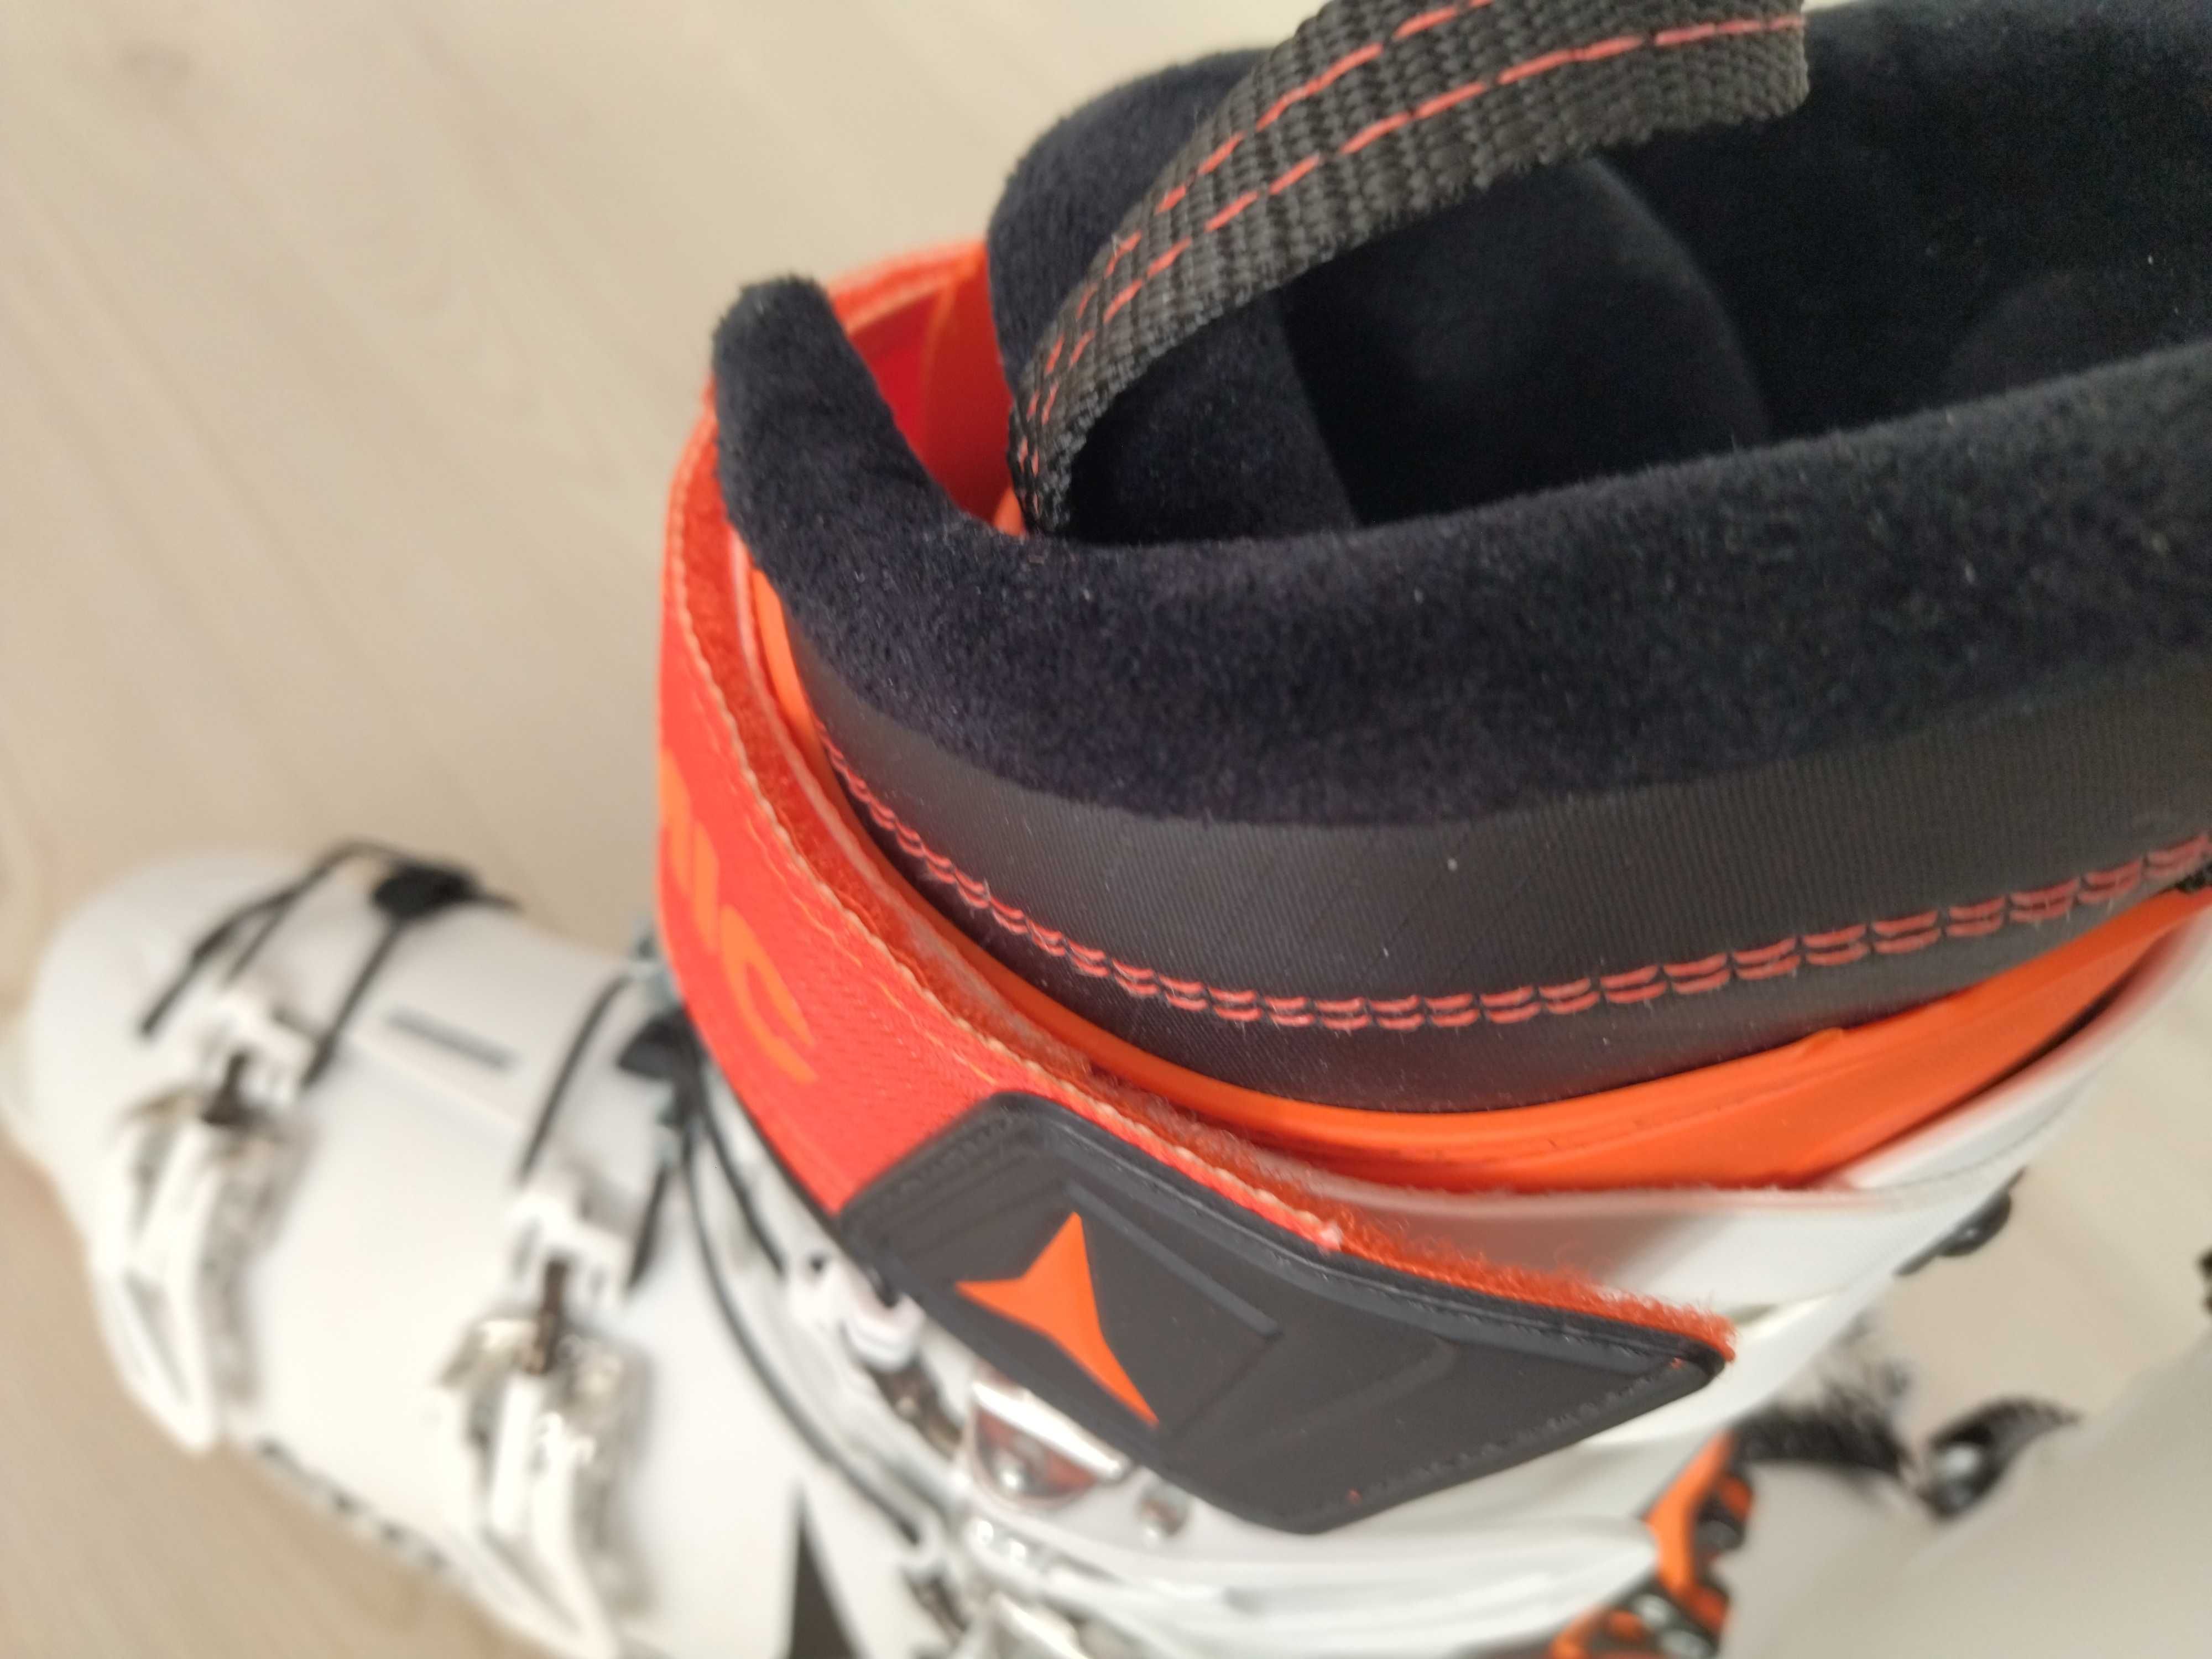 Ски туринг,комбинирани обувки Atomic Hawx ultra xtd 120  номер 29,5